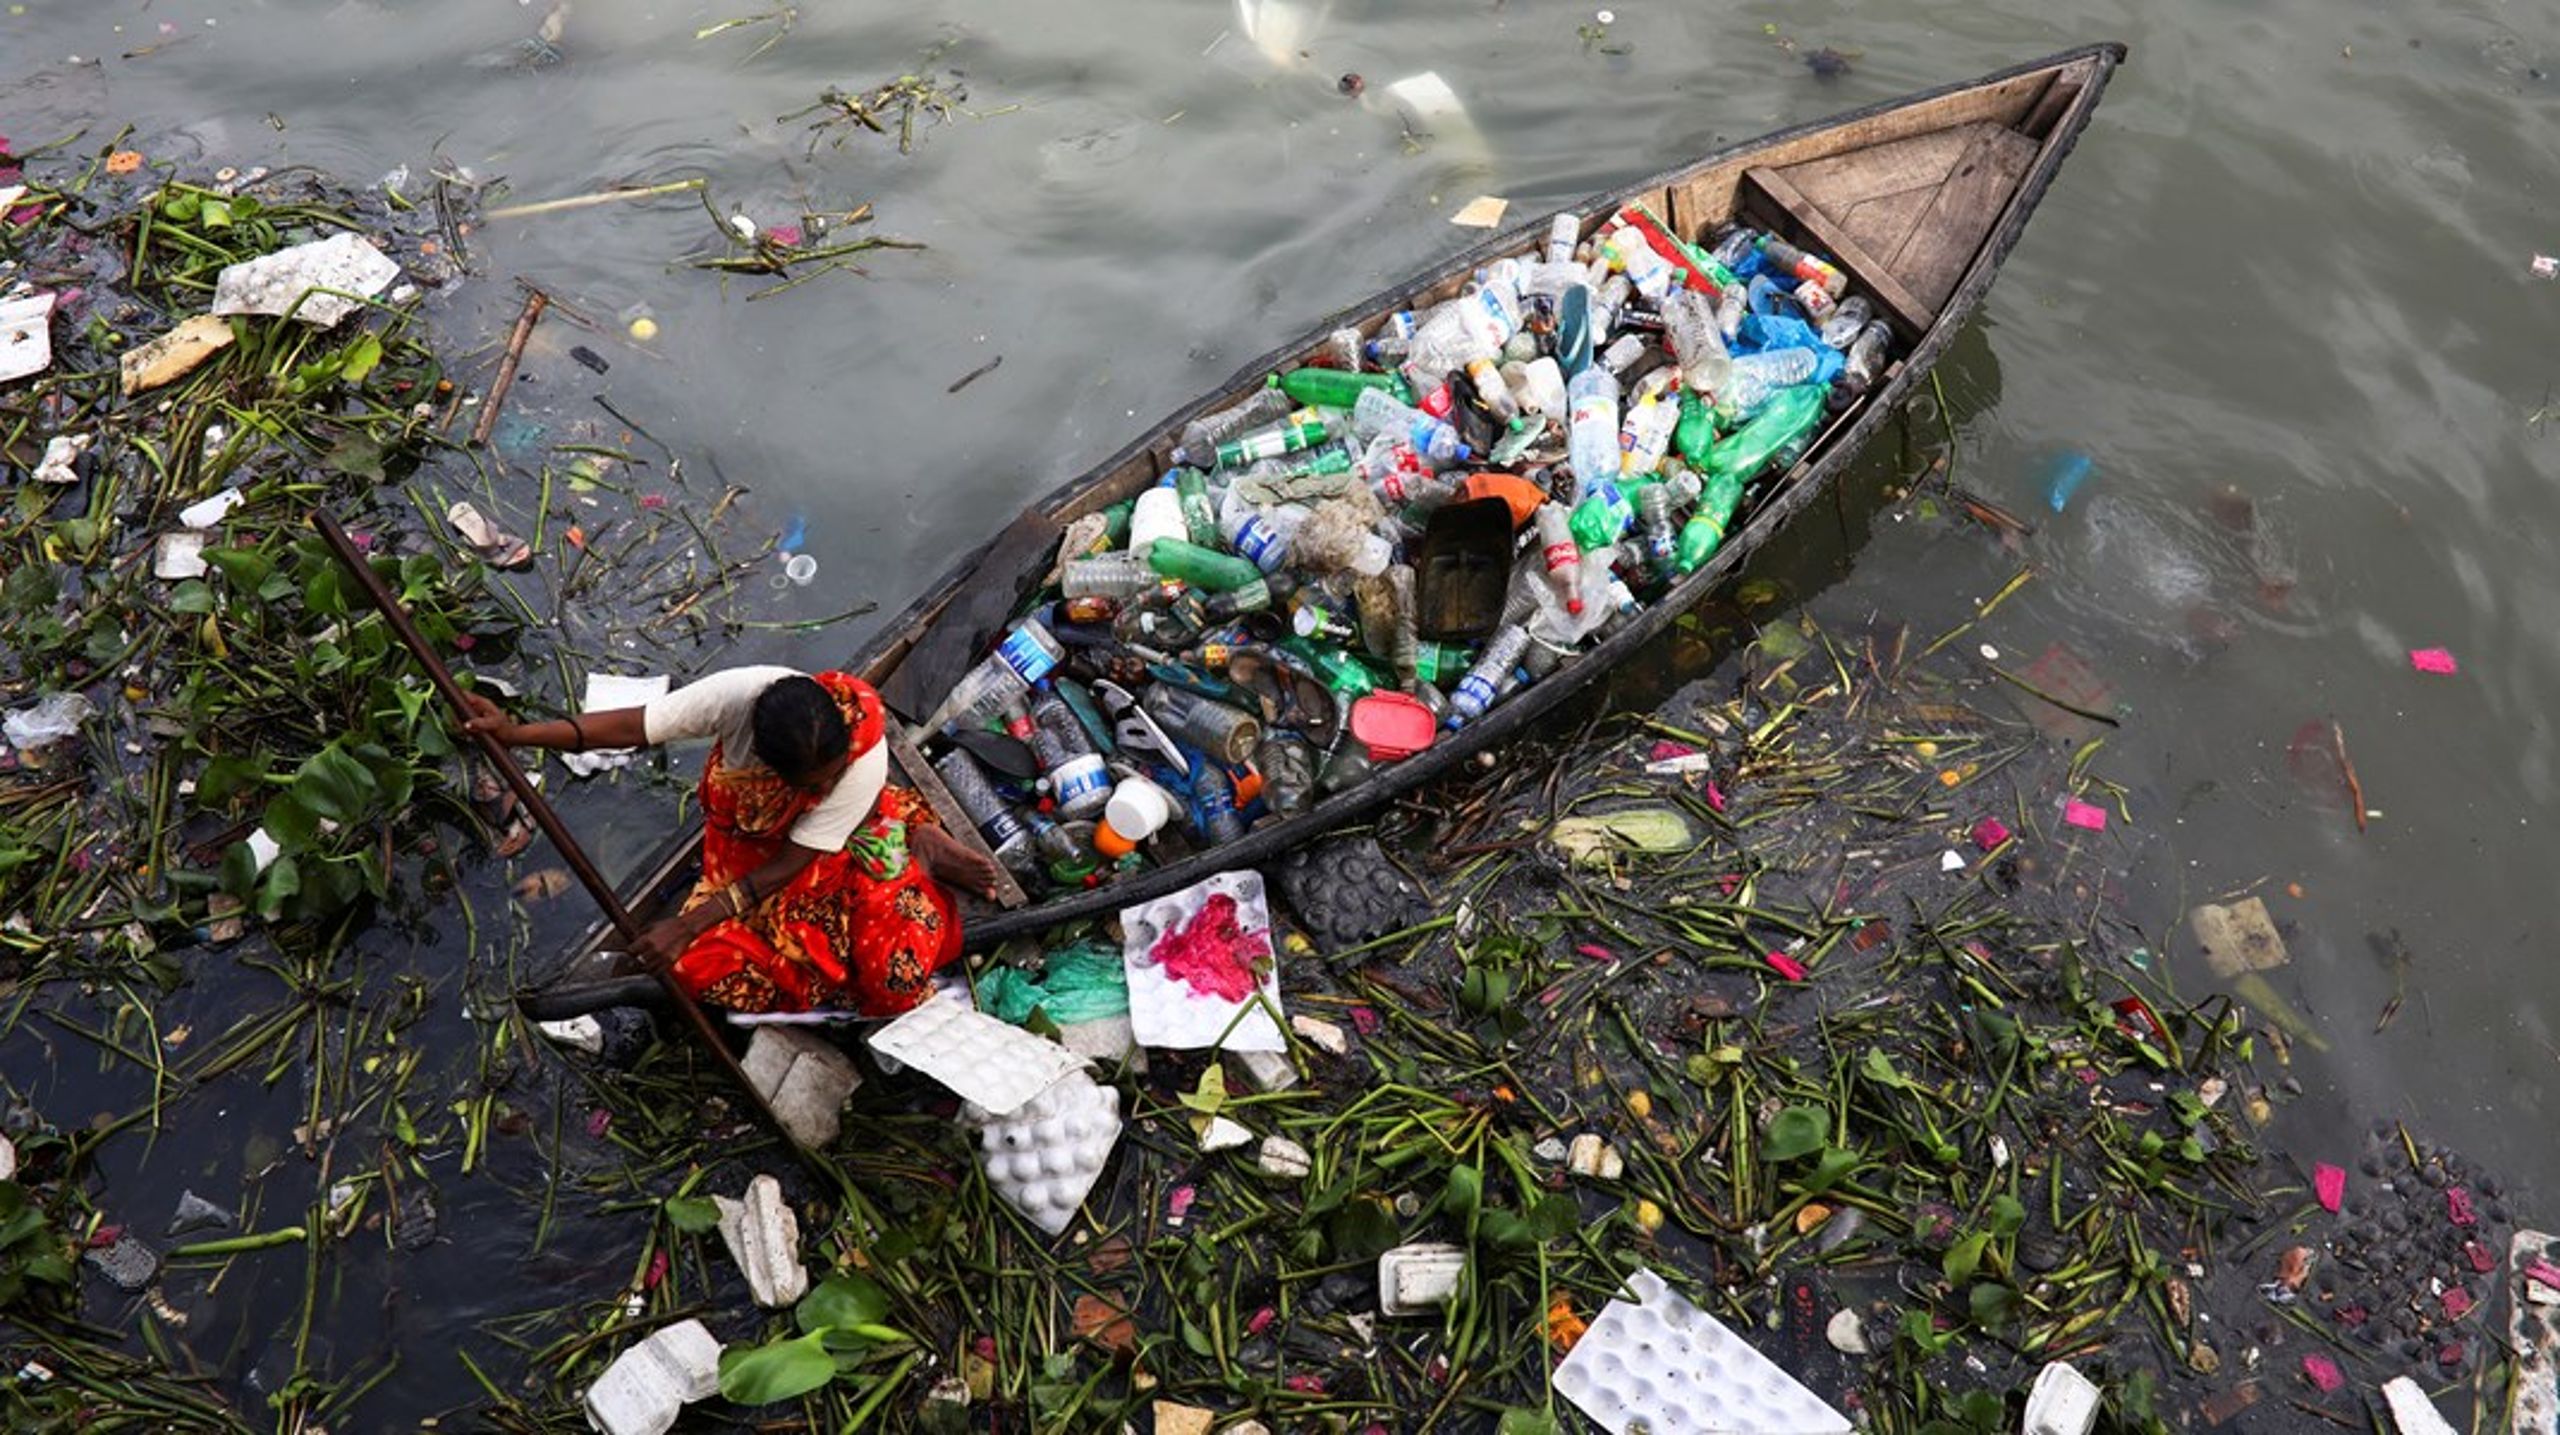 Der er fundet dansk plastikaffald fra husholdninger dumpet i både Malaysia og Tyrkiet, skriver Anne Aittomaki.